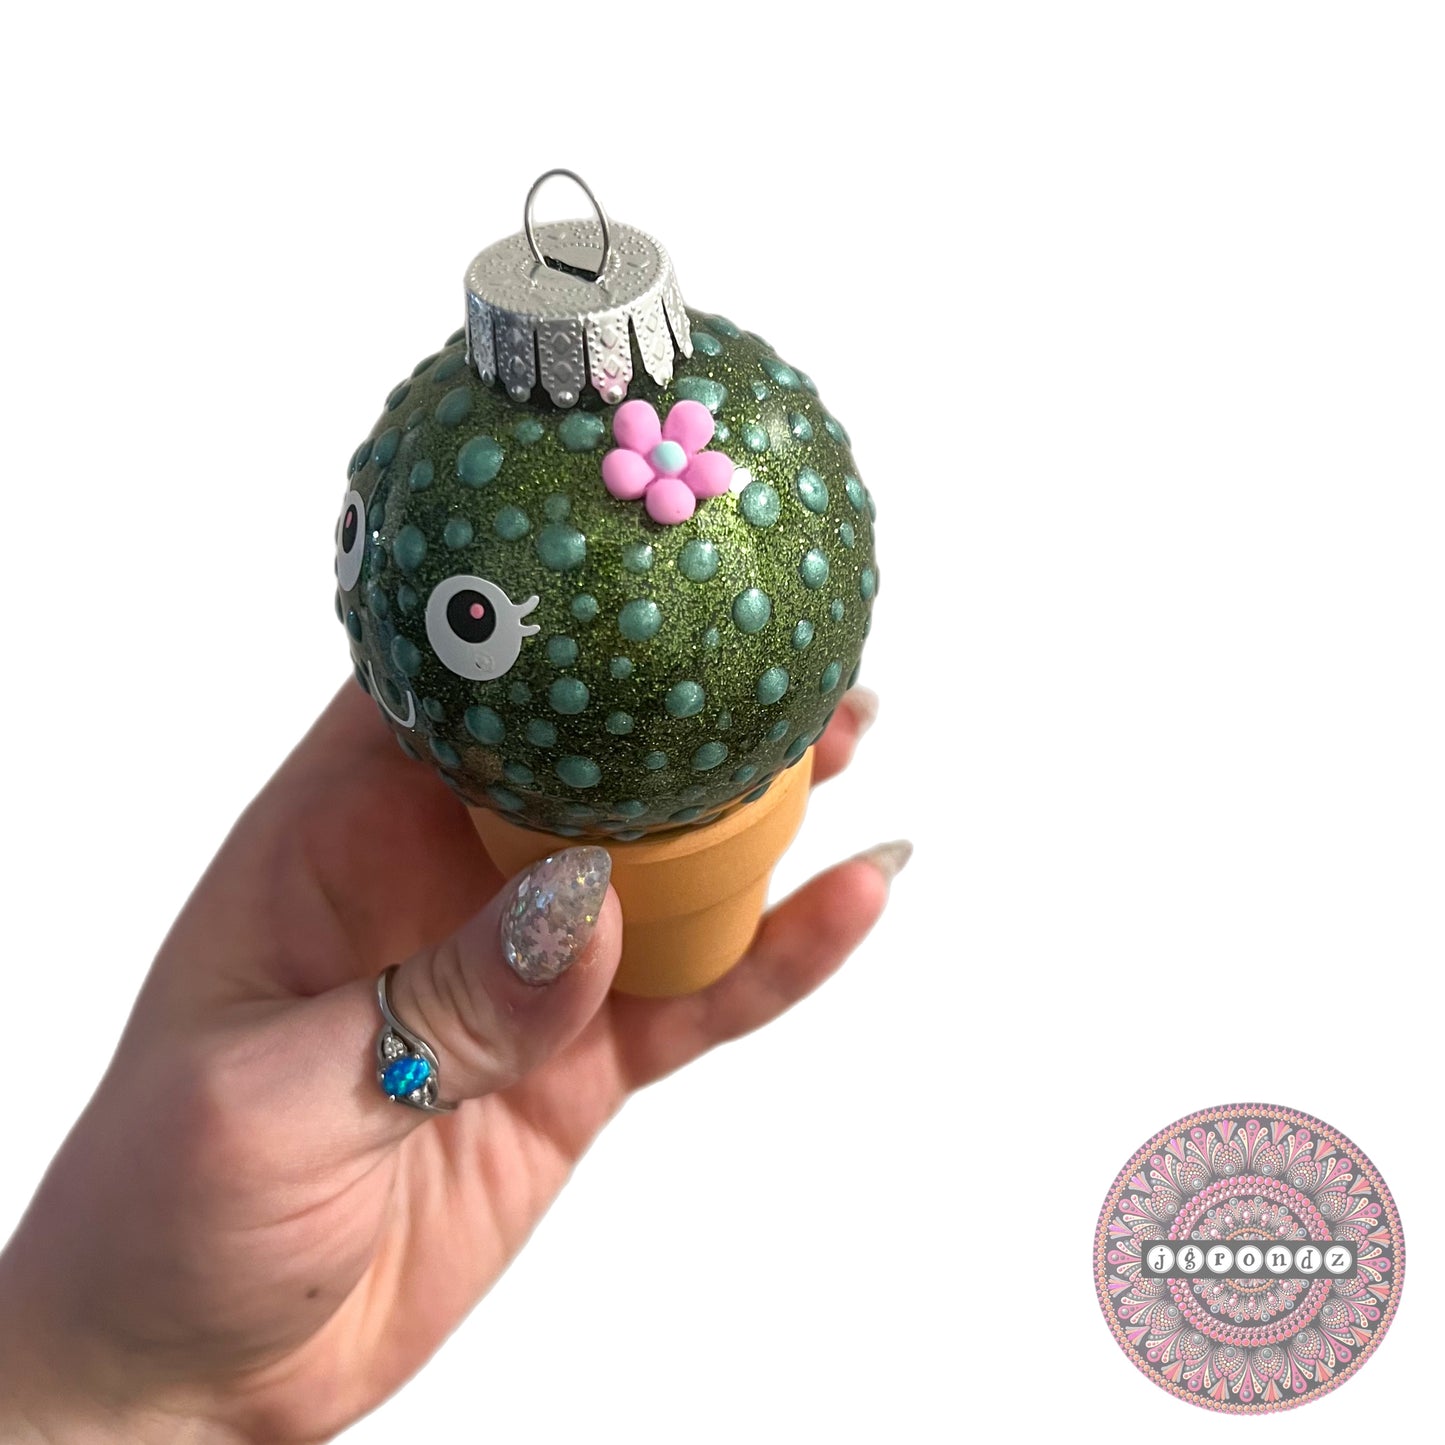 Cute Cactus Ornament